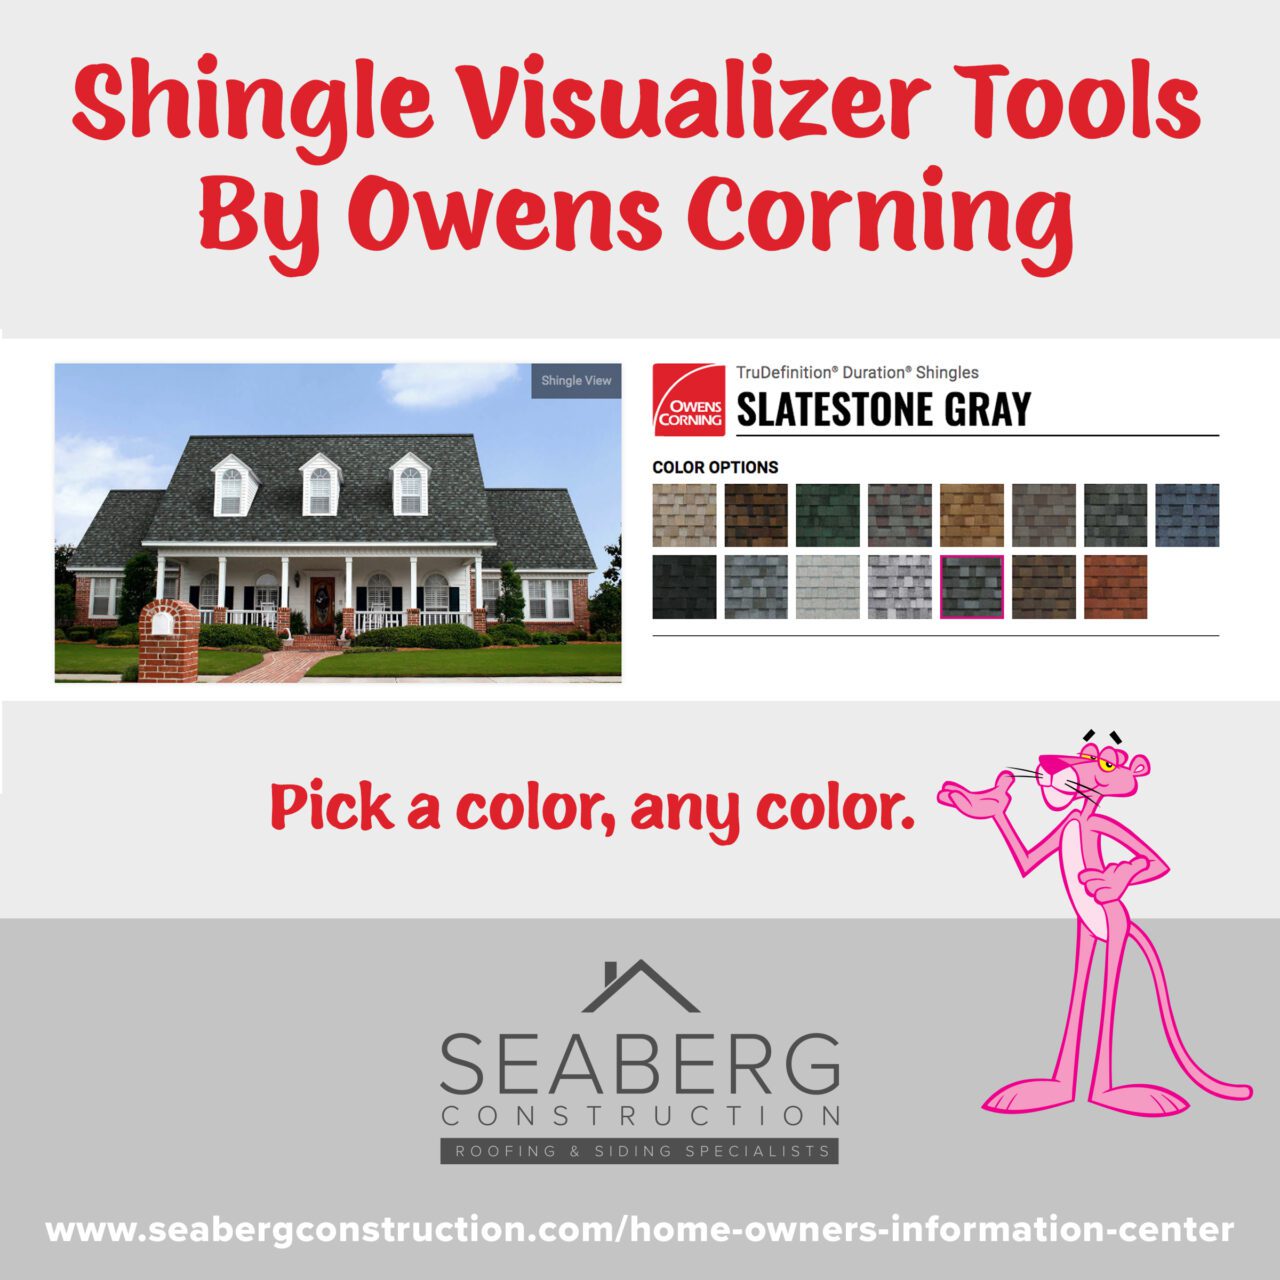 Seaberg Construction Blog: Shingle Visualizer Tools By Owens Corning